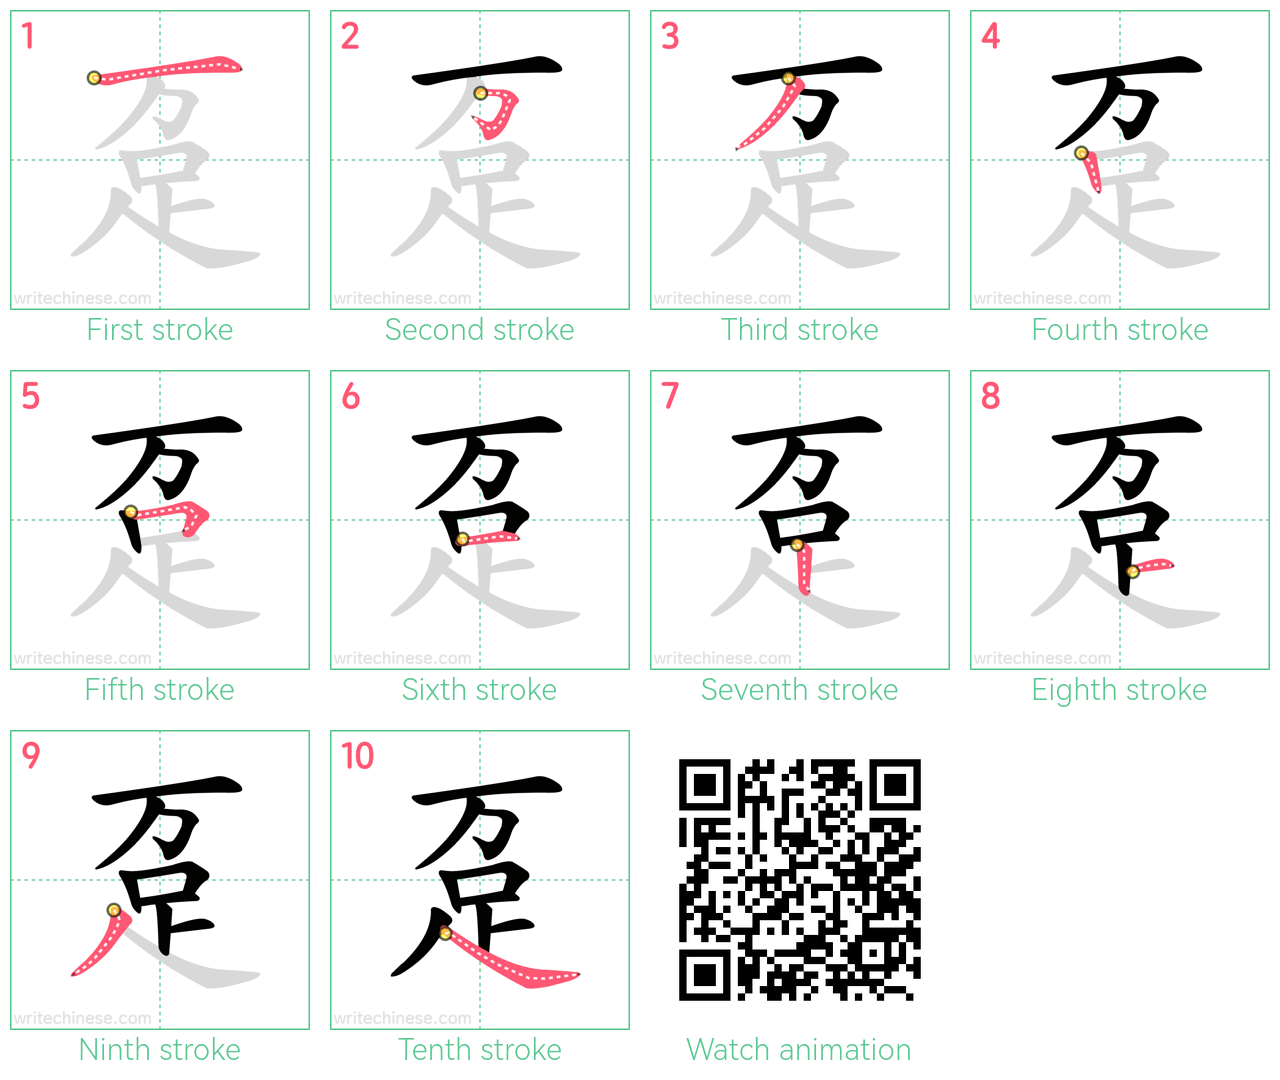 趸 step-by-step stroke order diagrams